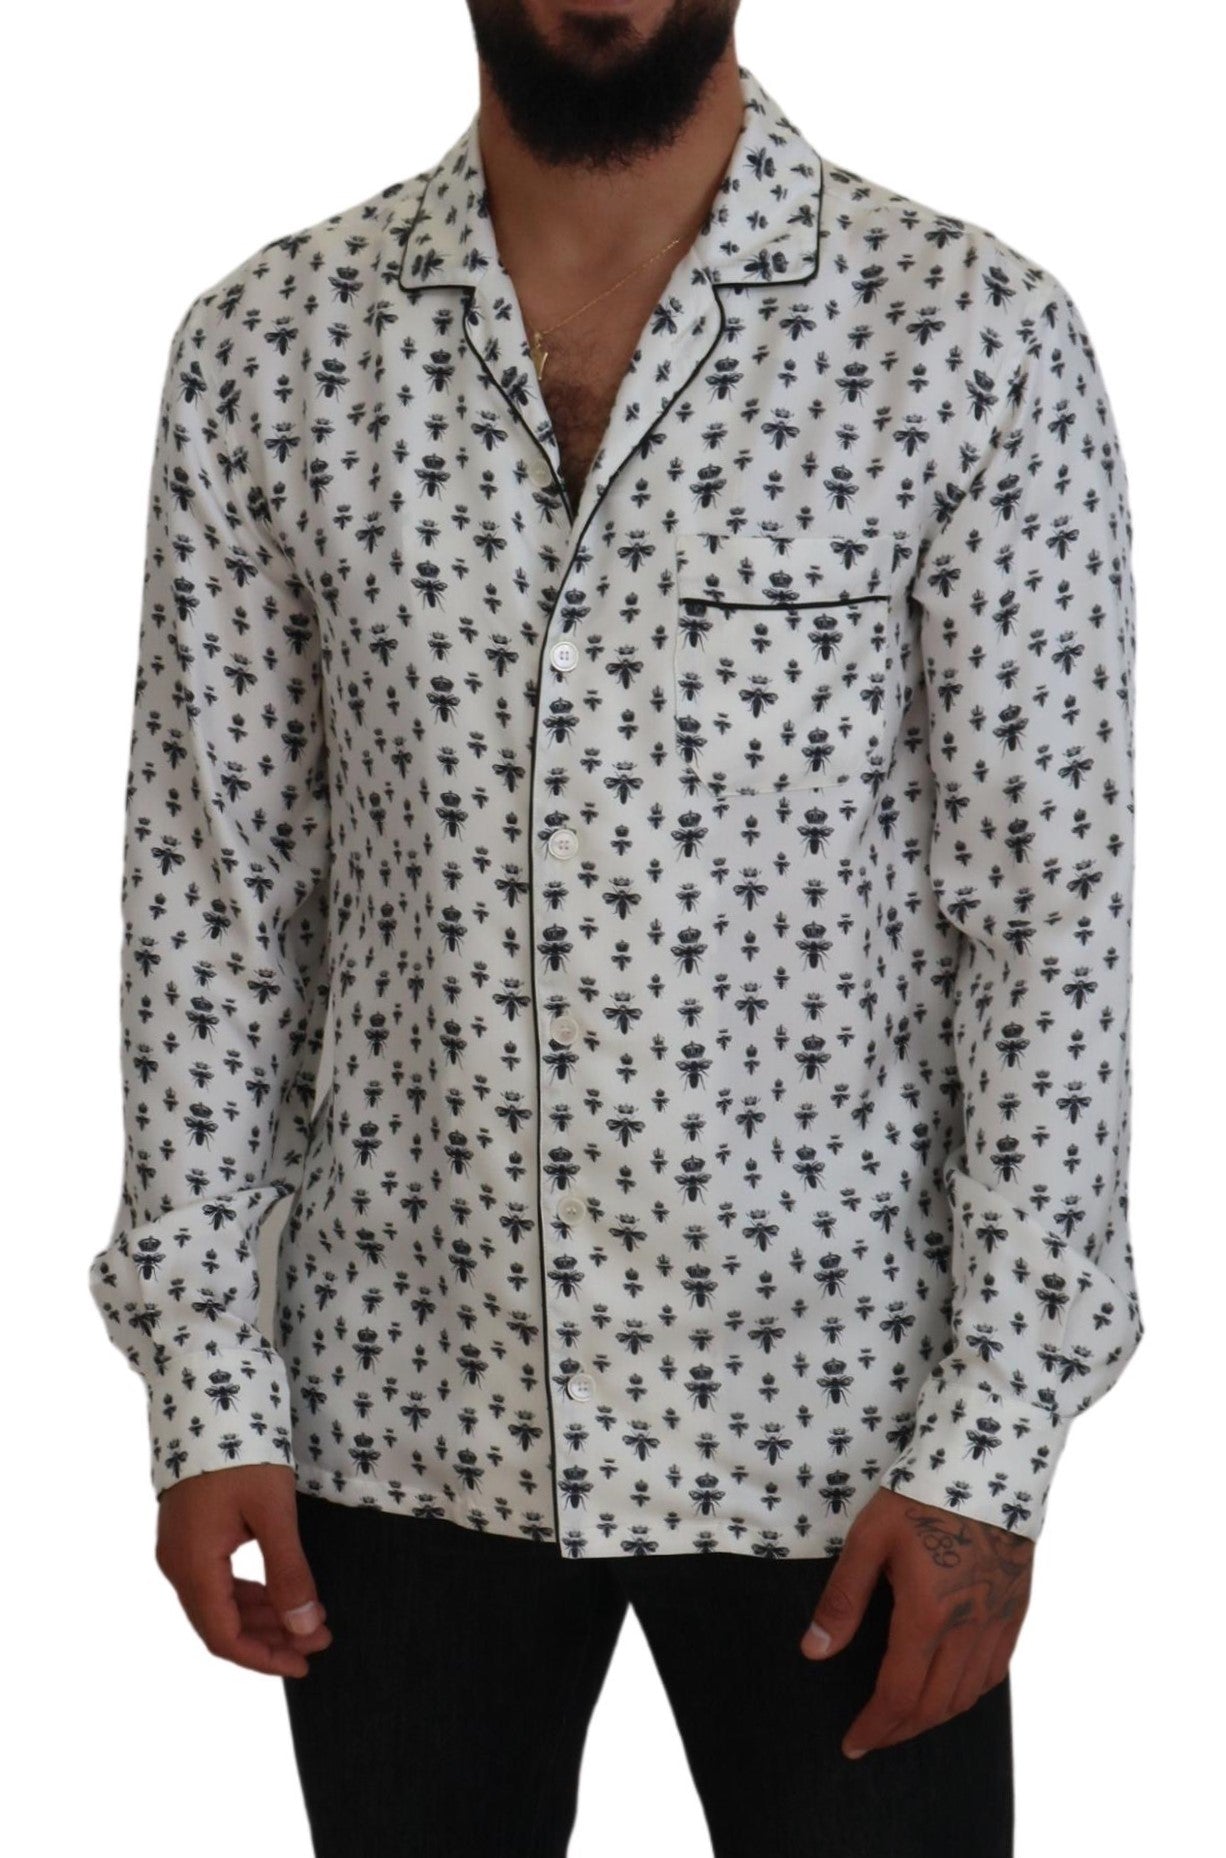 Elegant Silk Pajama Top with Crown Bee Print